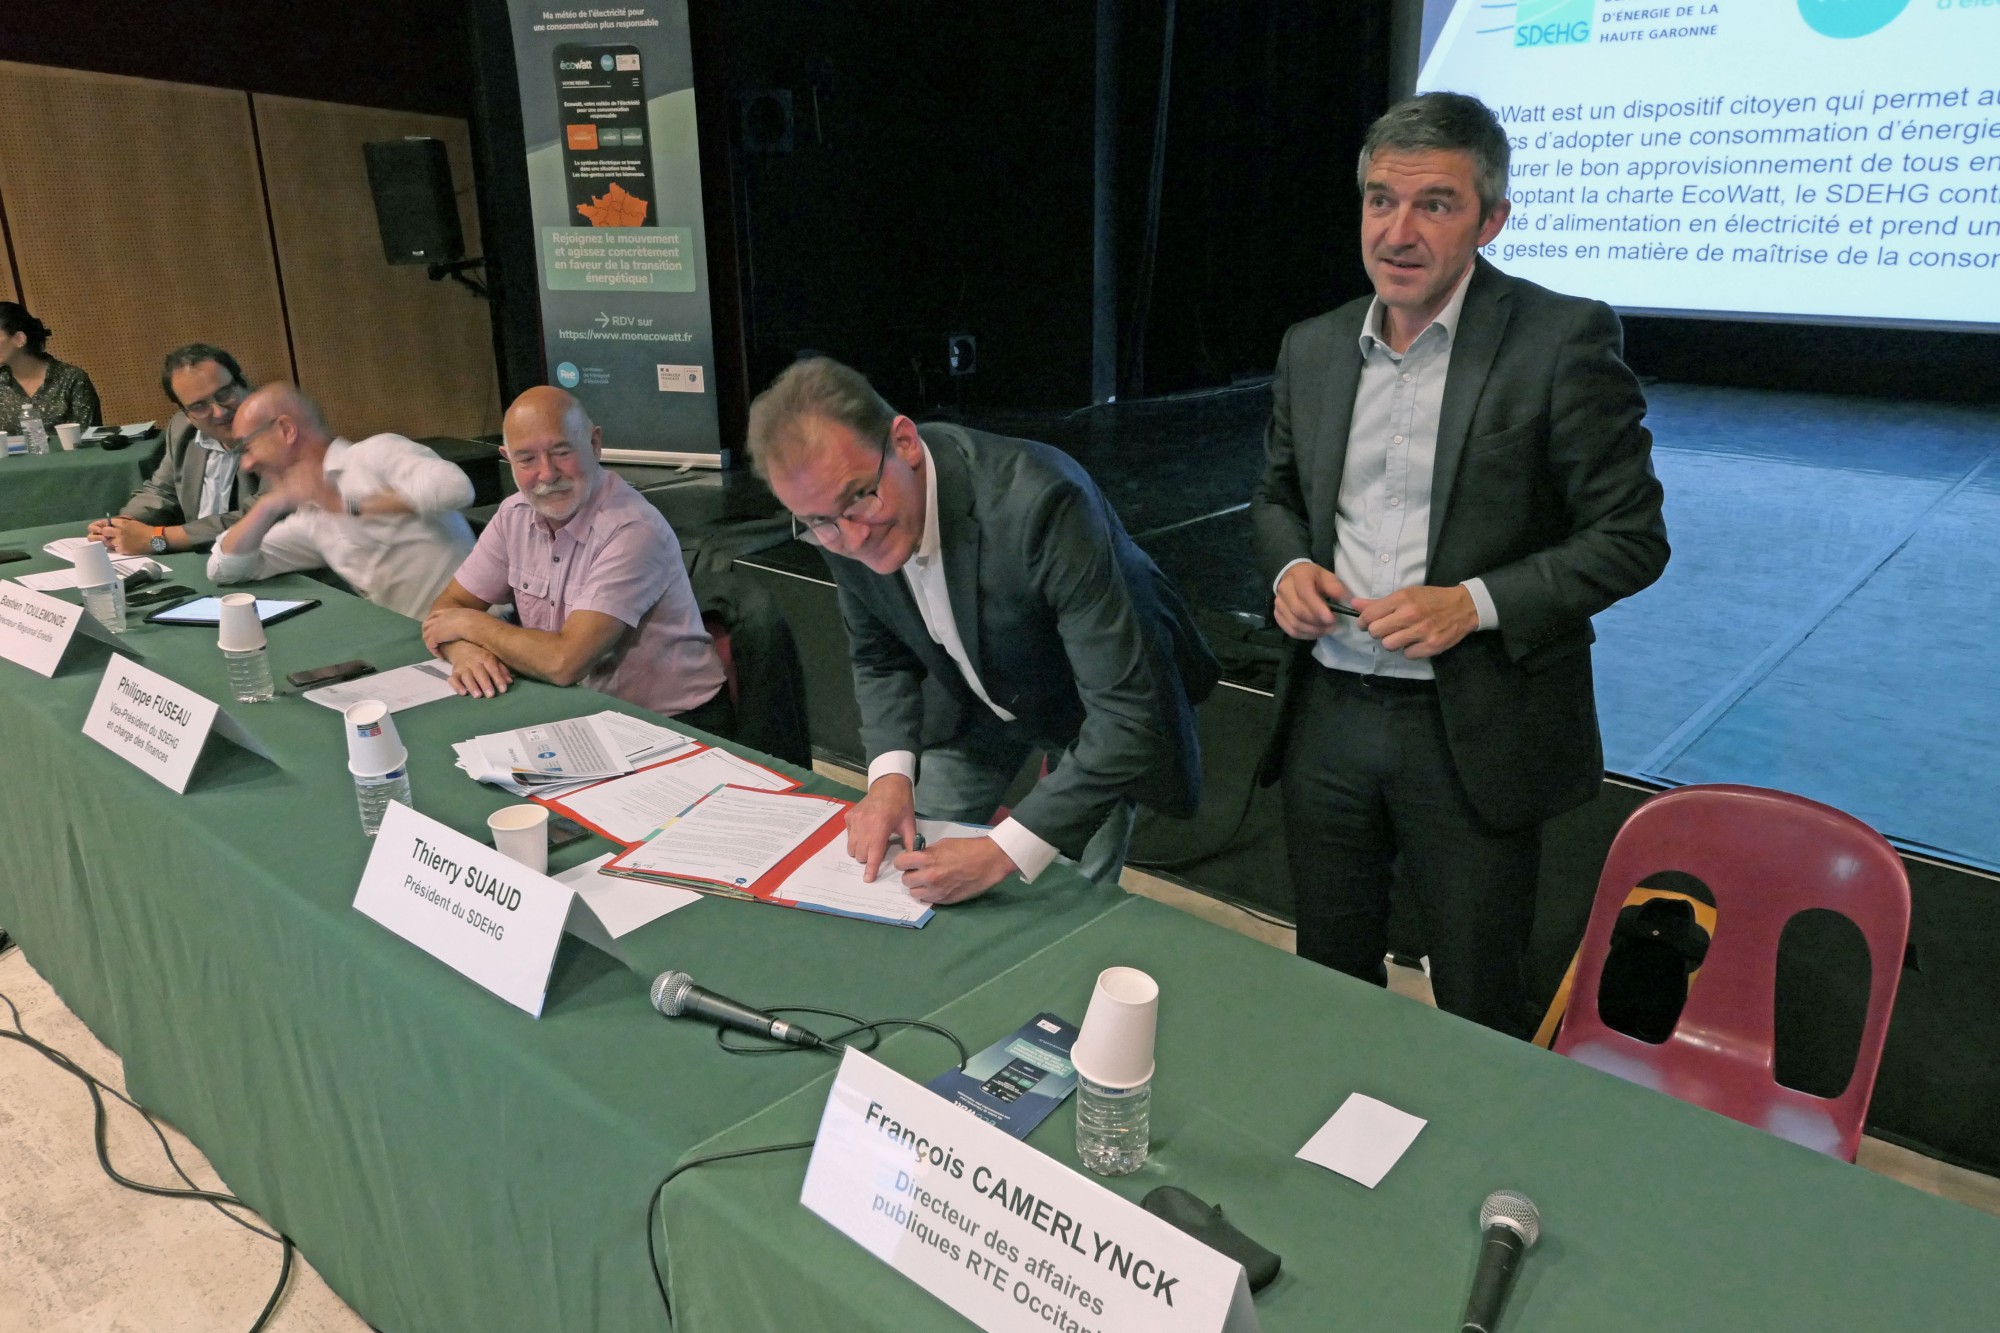 Haute-Garonne - Le SDEHG signe la charte EcoWatt pour une meilleure consommation de l'électricité